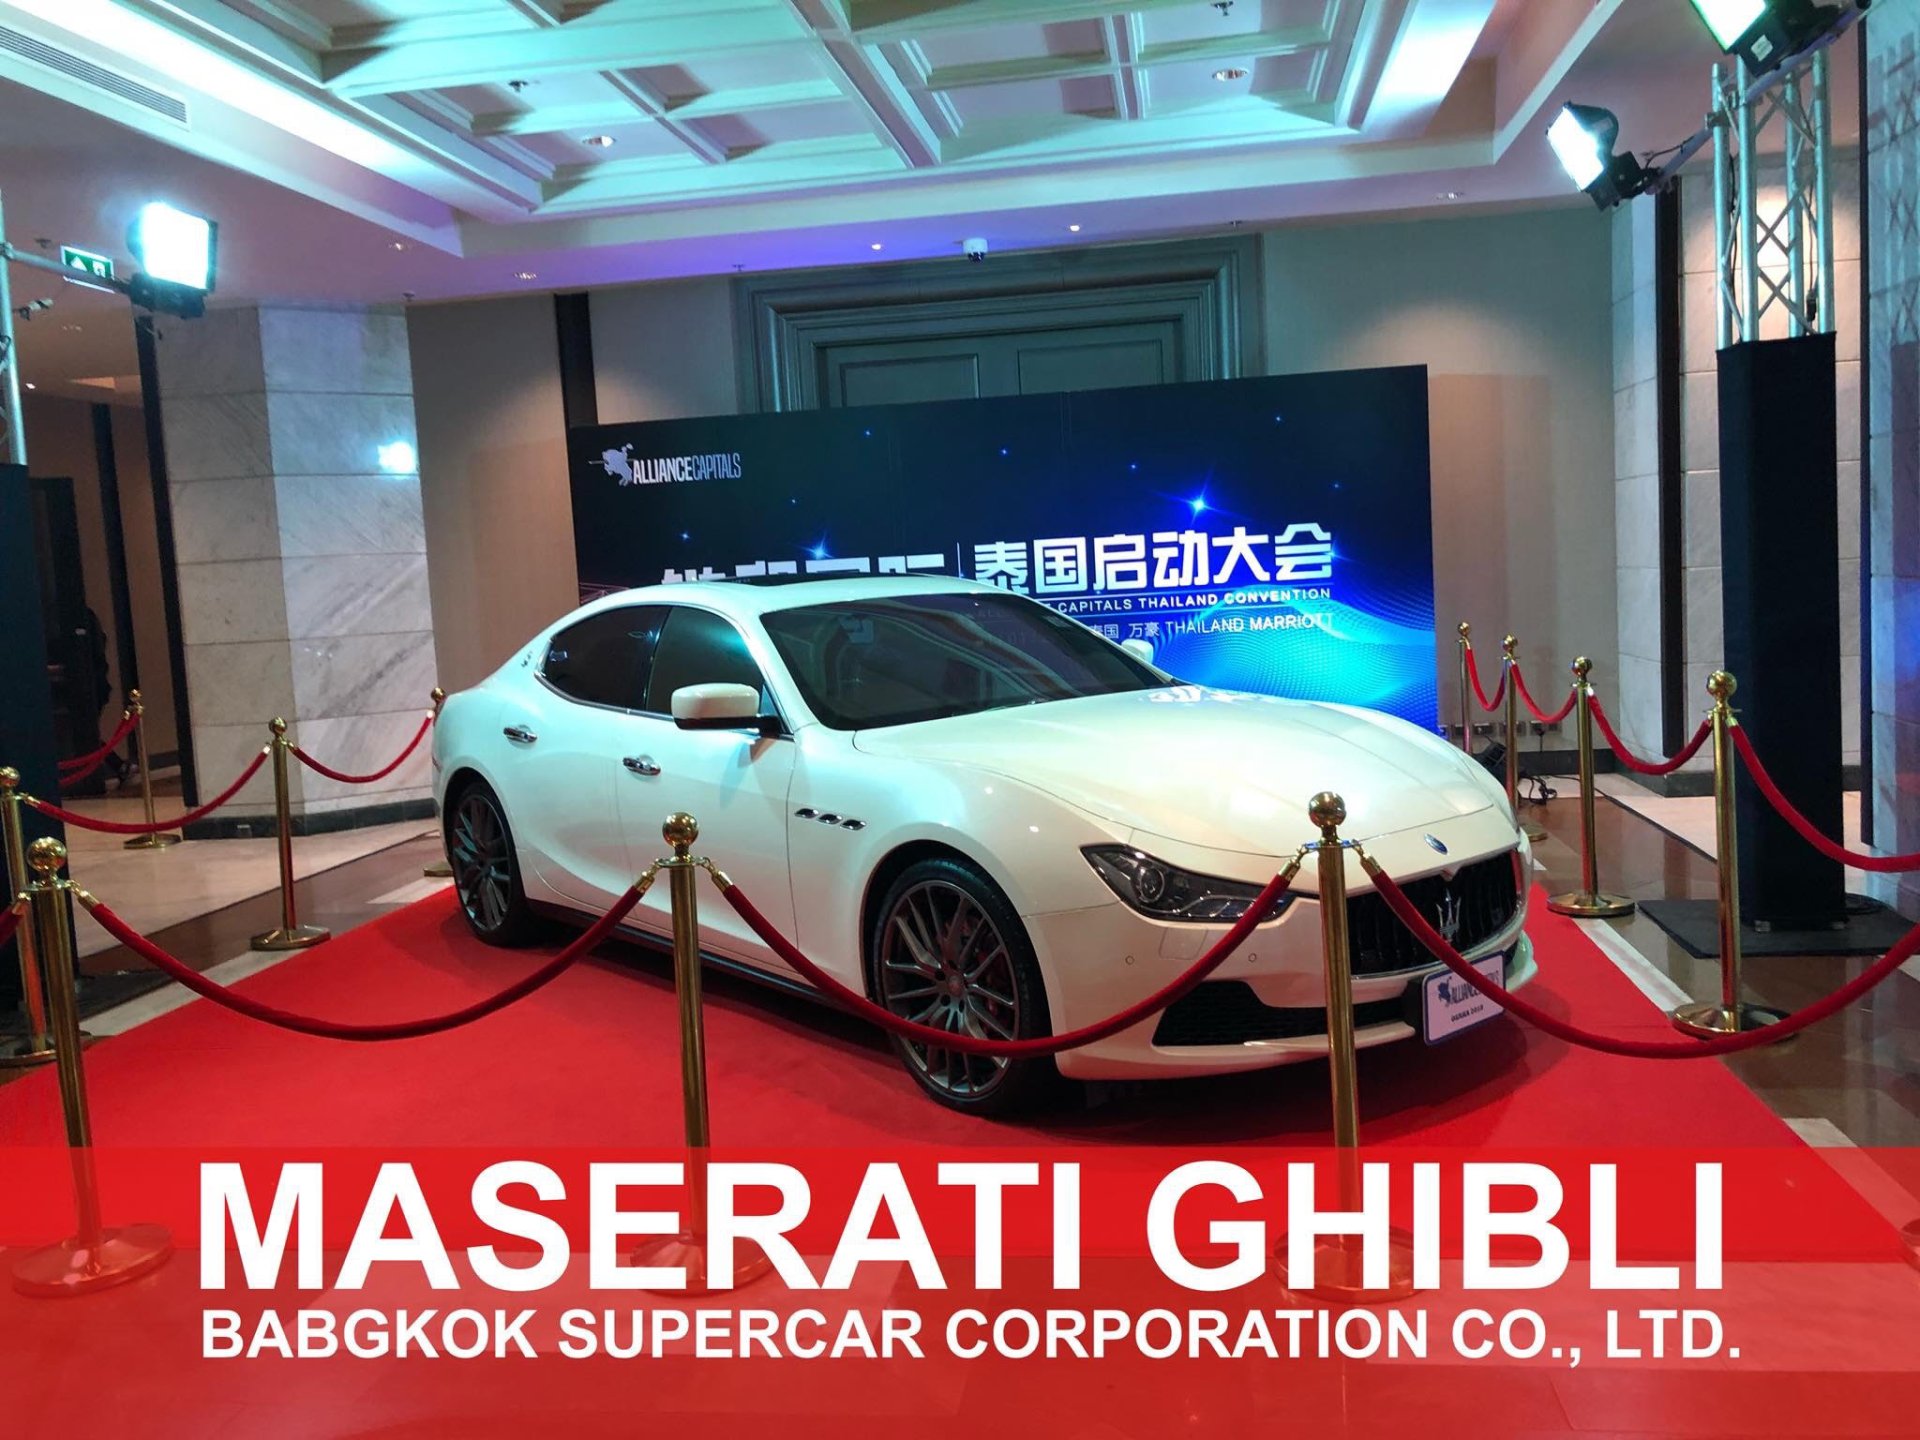 พา Maserati Ghibli มาโชว์งาน event ณ โรงแรม Bangkok Marriott Marquis